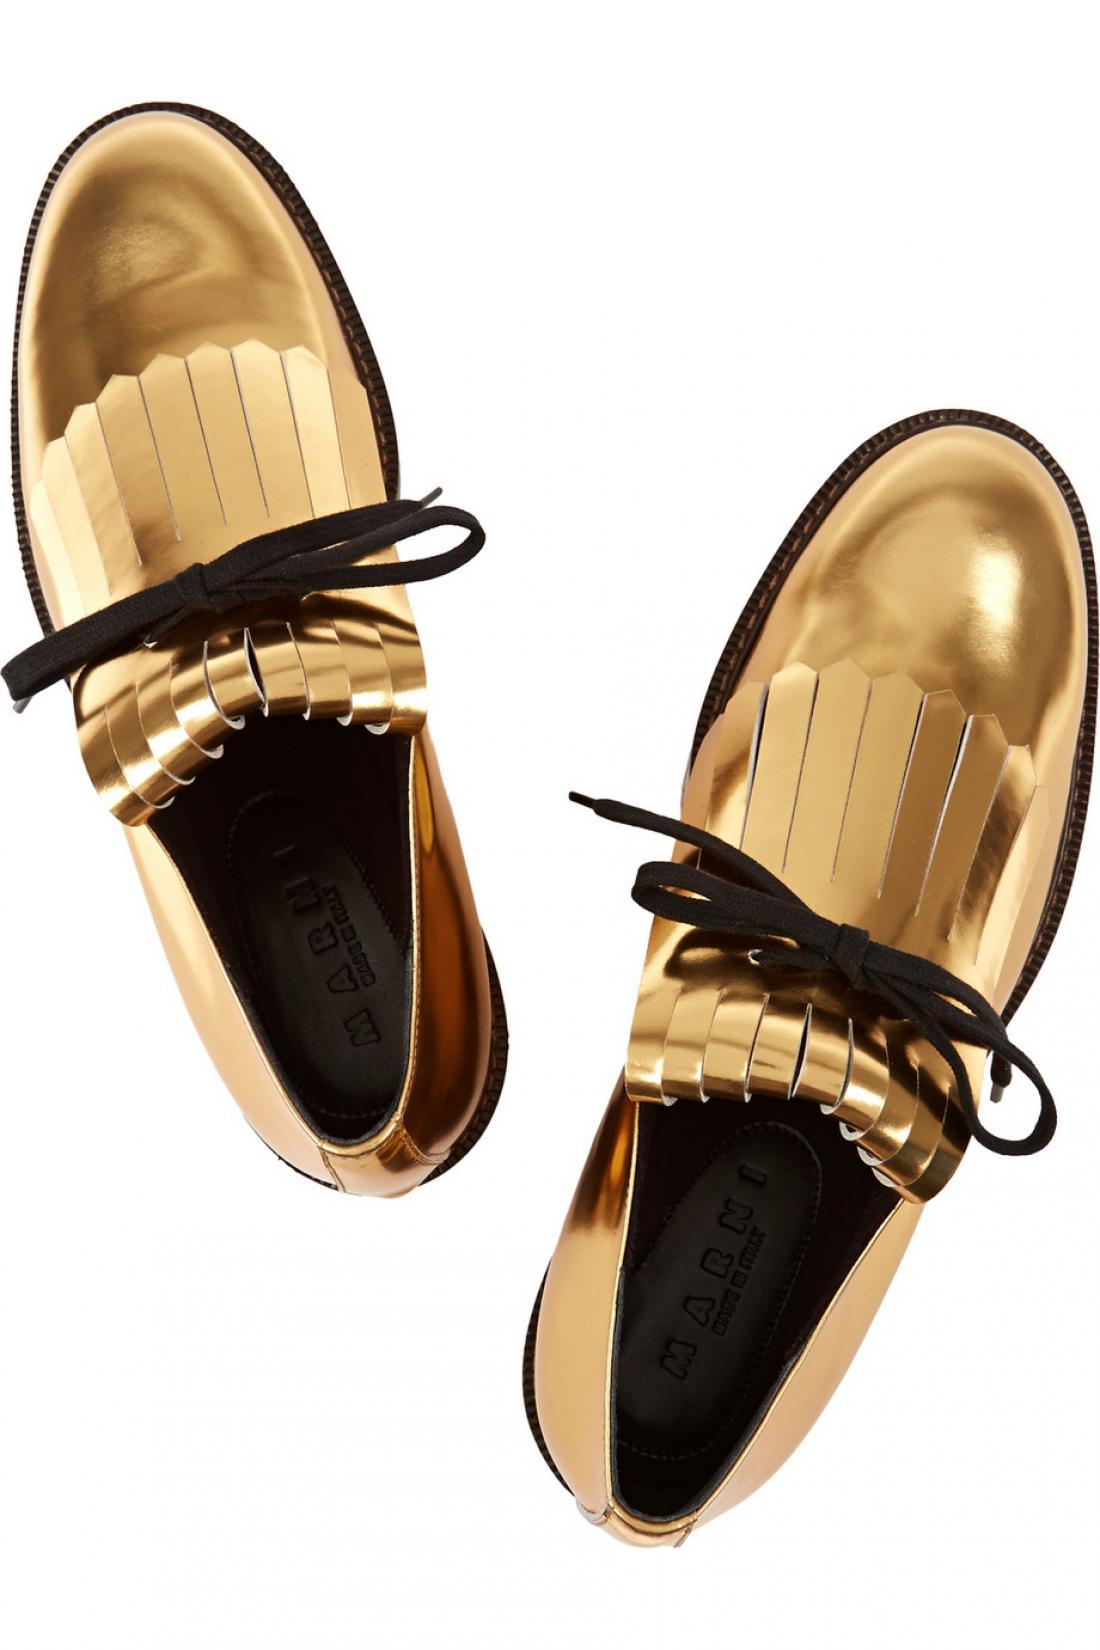 Zlati Marnijevi čevlji za najlepši sprehod skozi jesen.